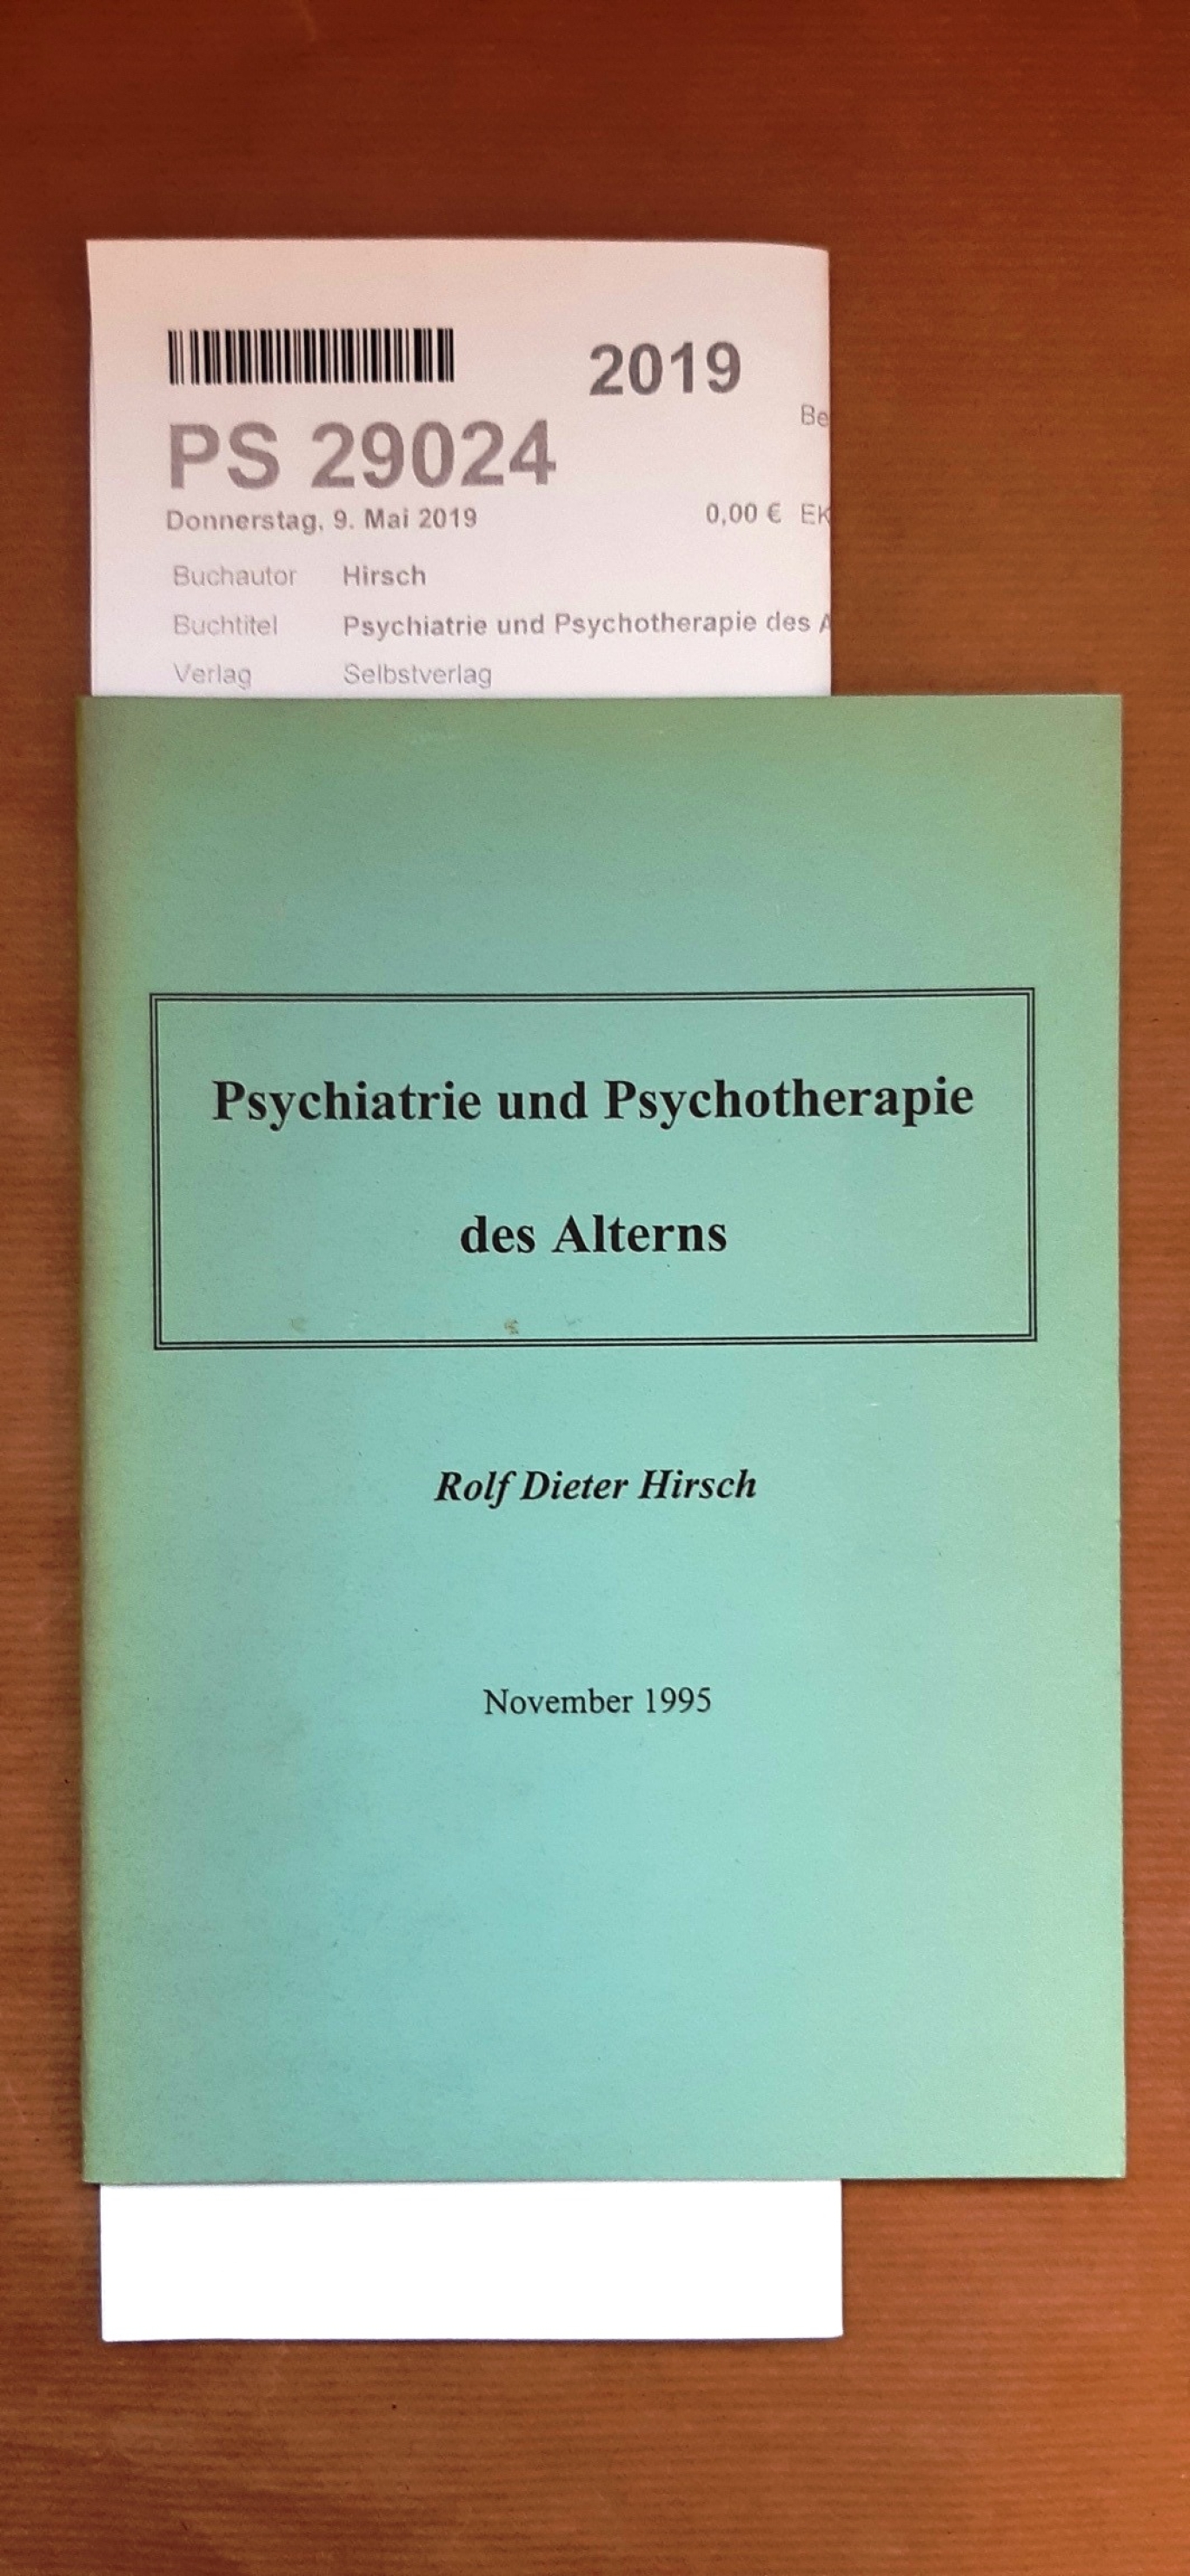 Hirsch, Rolf Dieter: Psychiatrie und Psychotherapie des Alterns